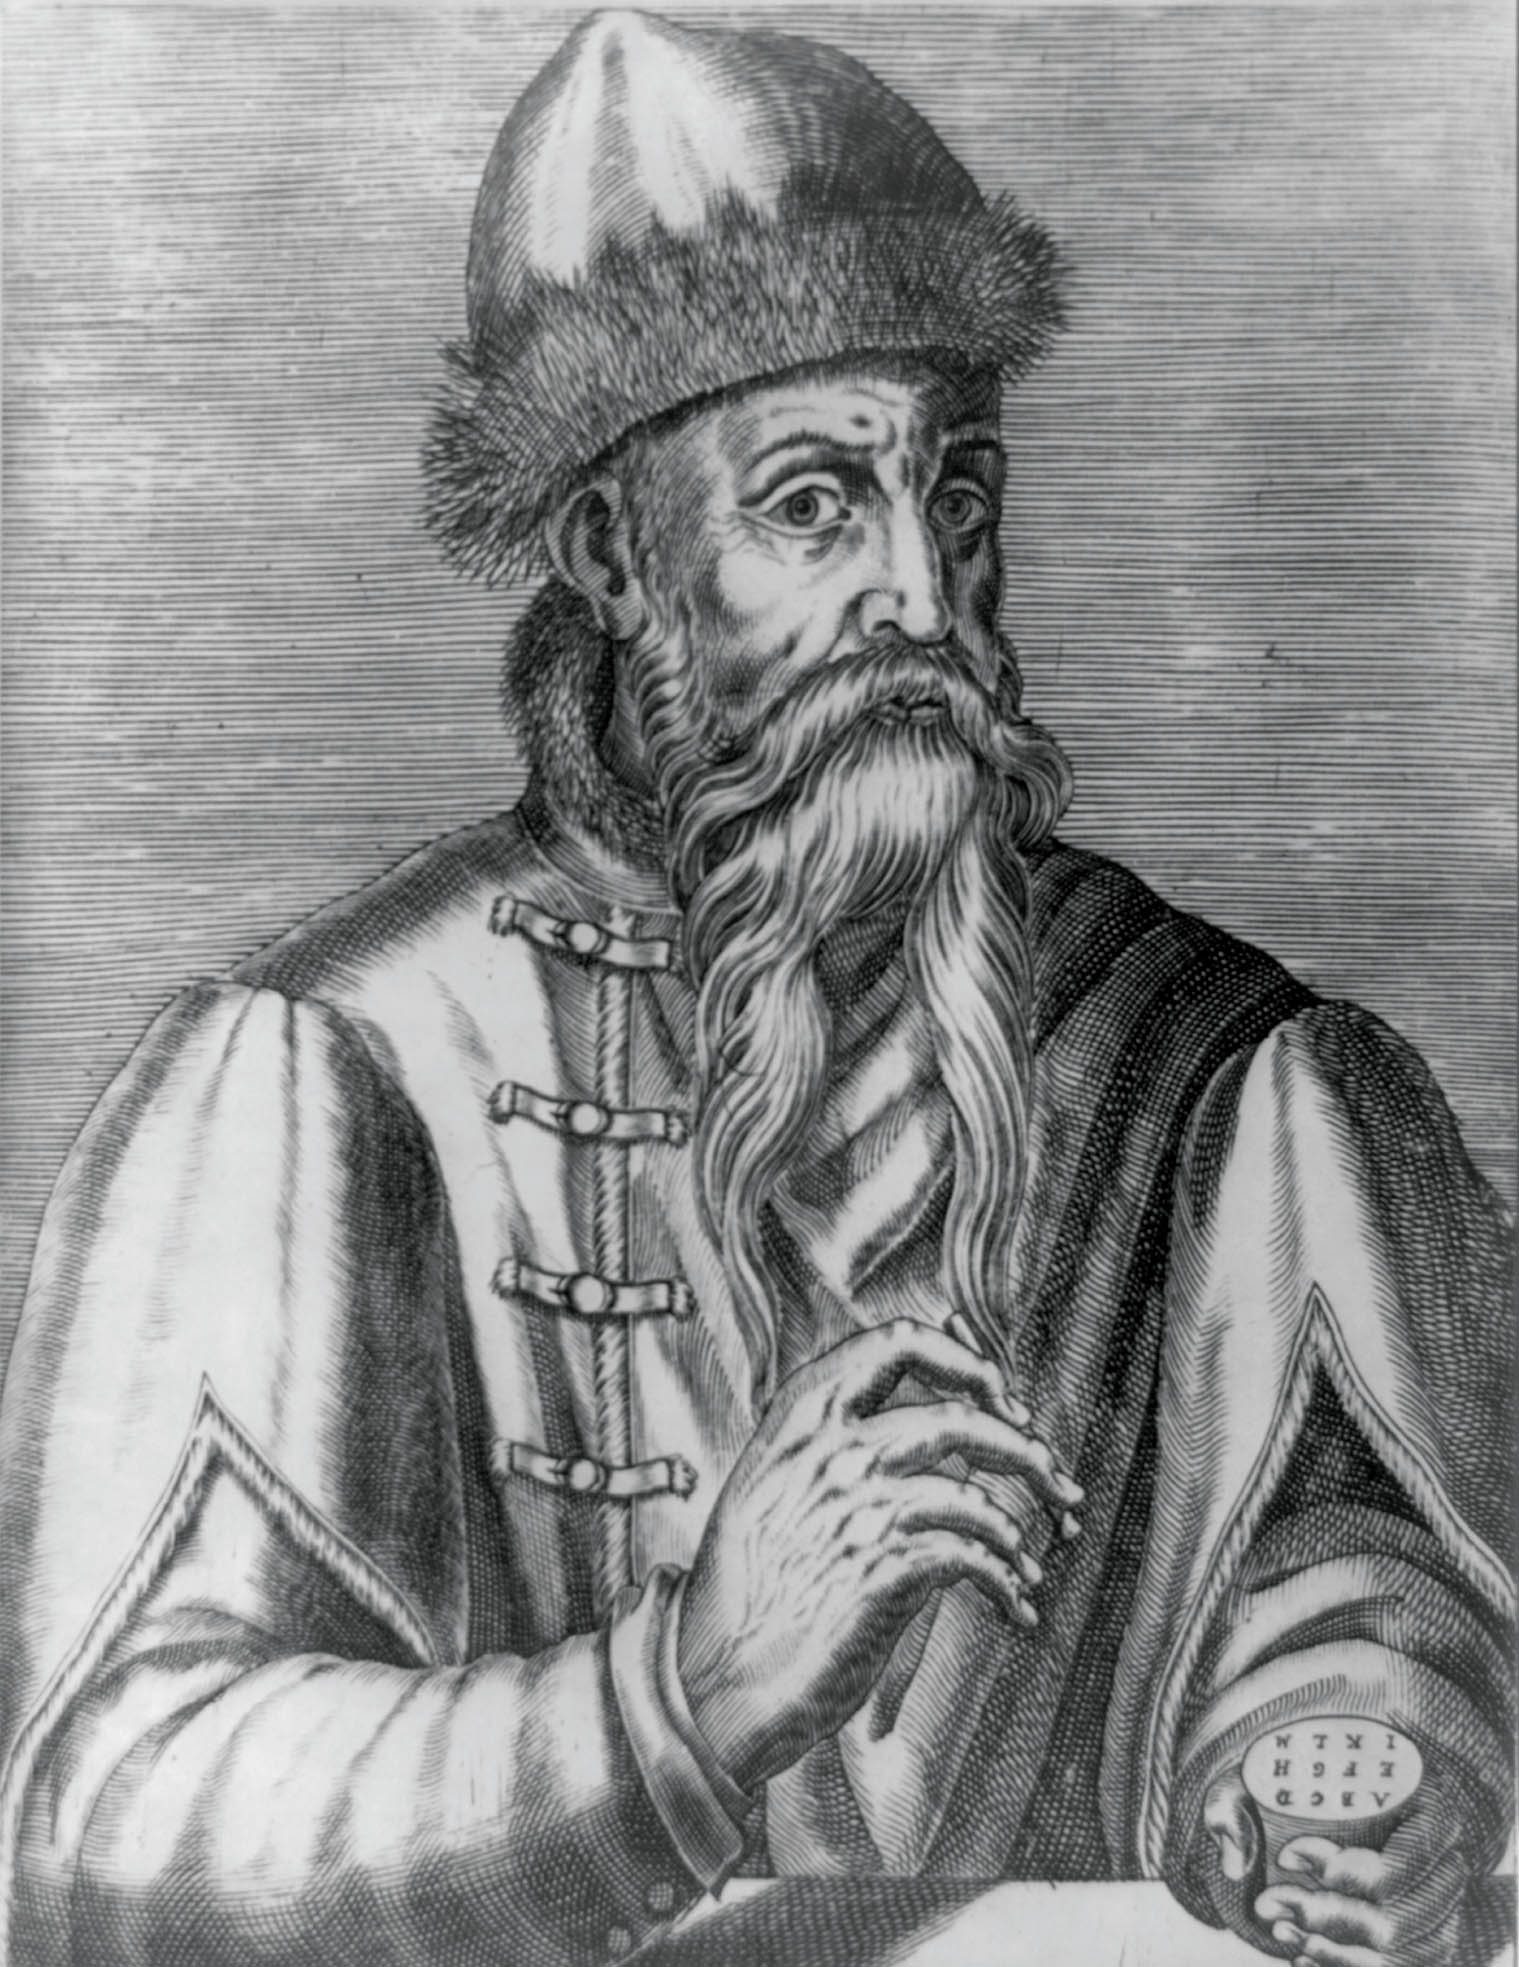 Johannes Gutenberg (1397–1468) vynalezl tisk pomoc vymnitelnch liter. Knihy pestaly bt vsadou elity aknihtisk il informace, co vEvrop pisplo krozvoji vdy aekonomiky.